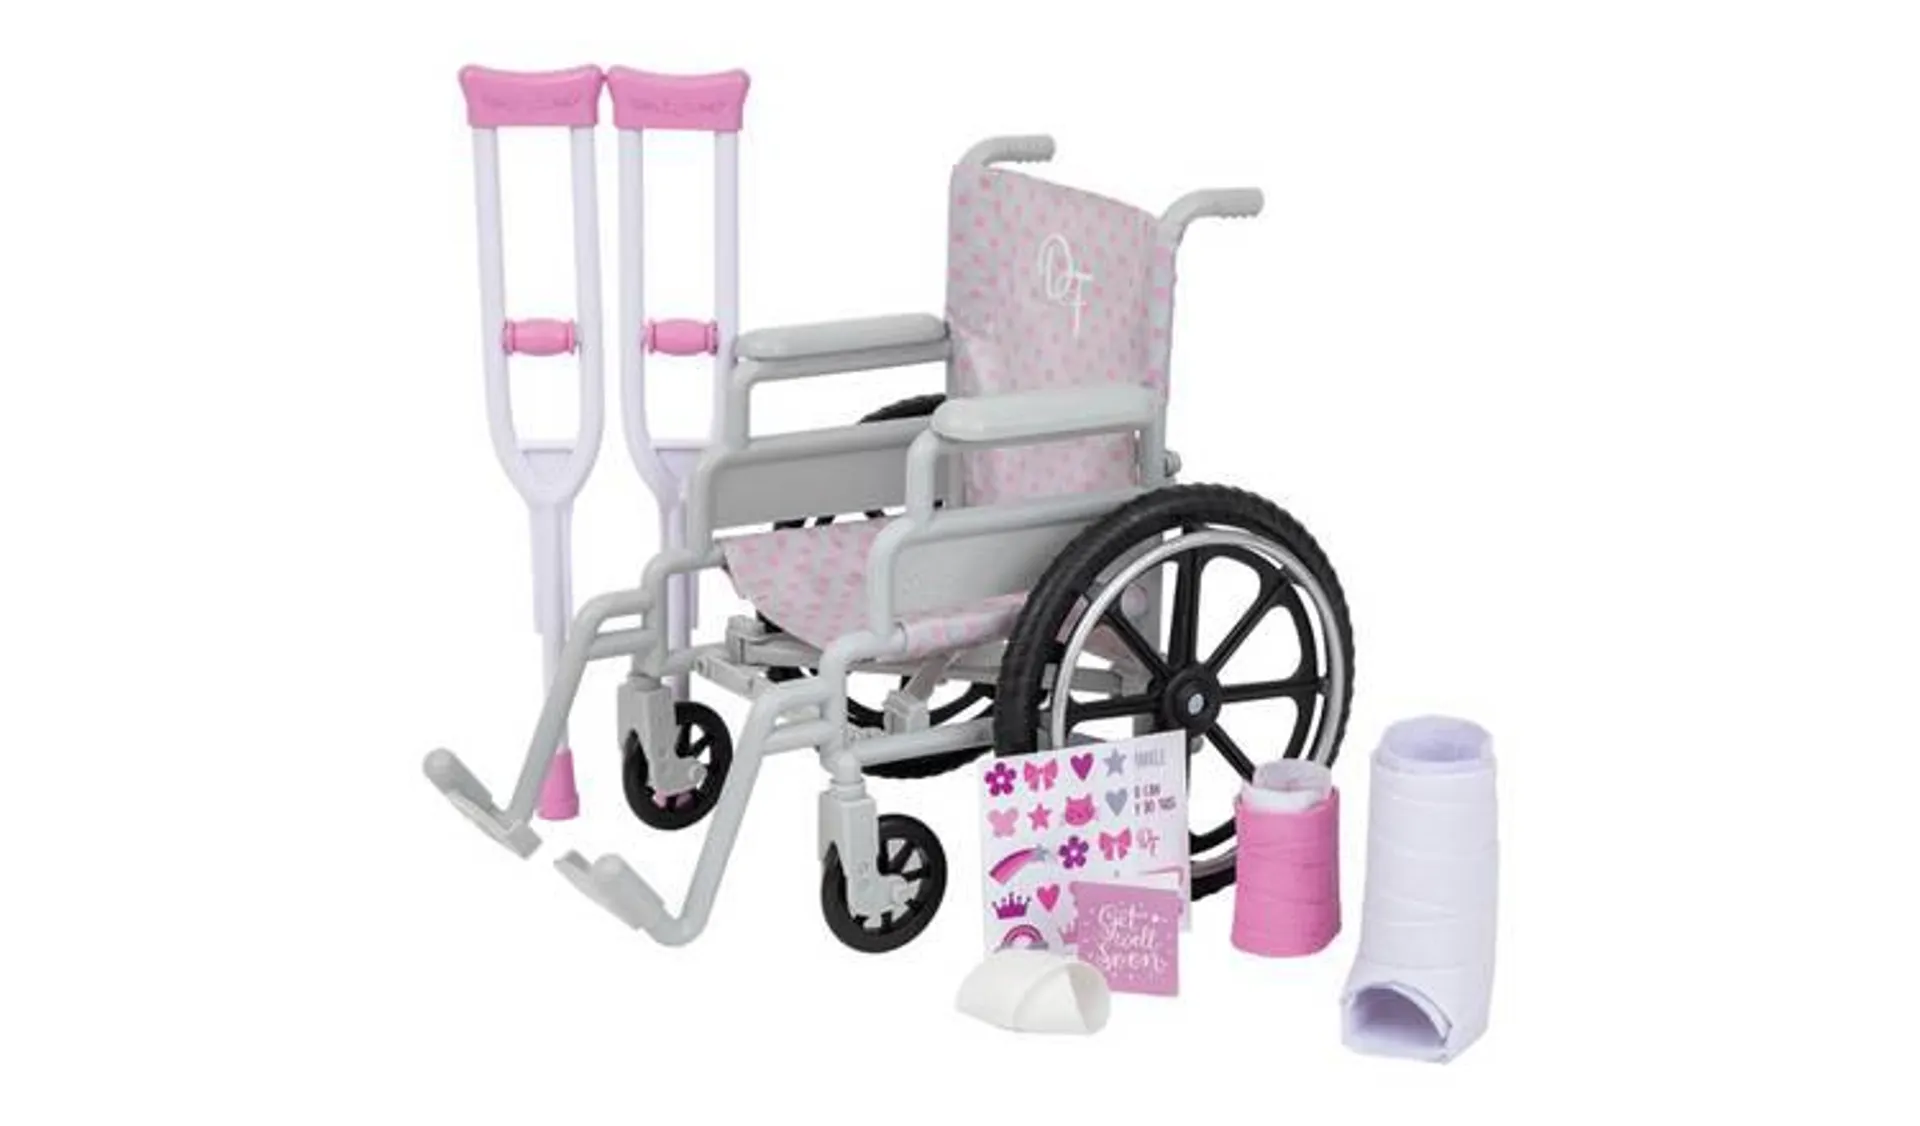 Designafriend Dolls Wheelchair and Crutches Playset